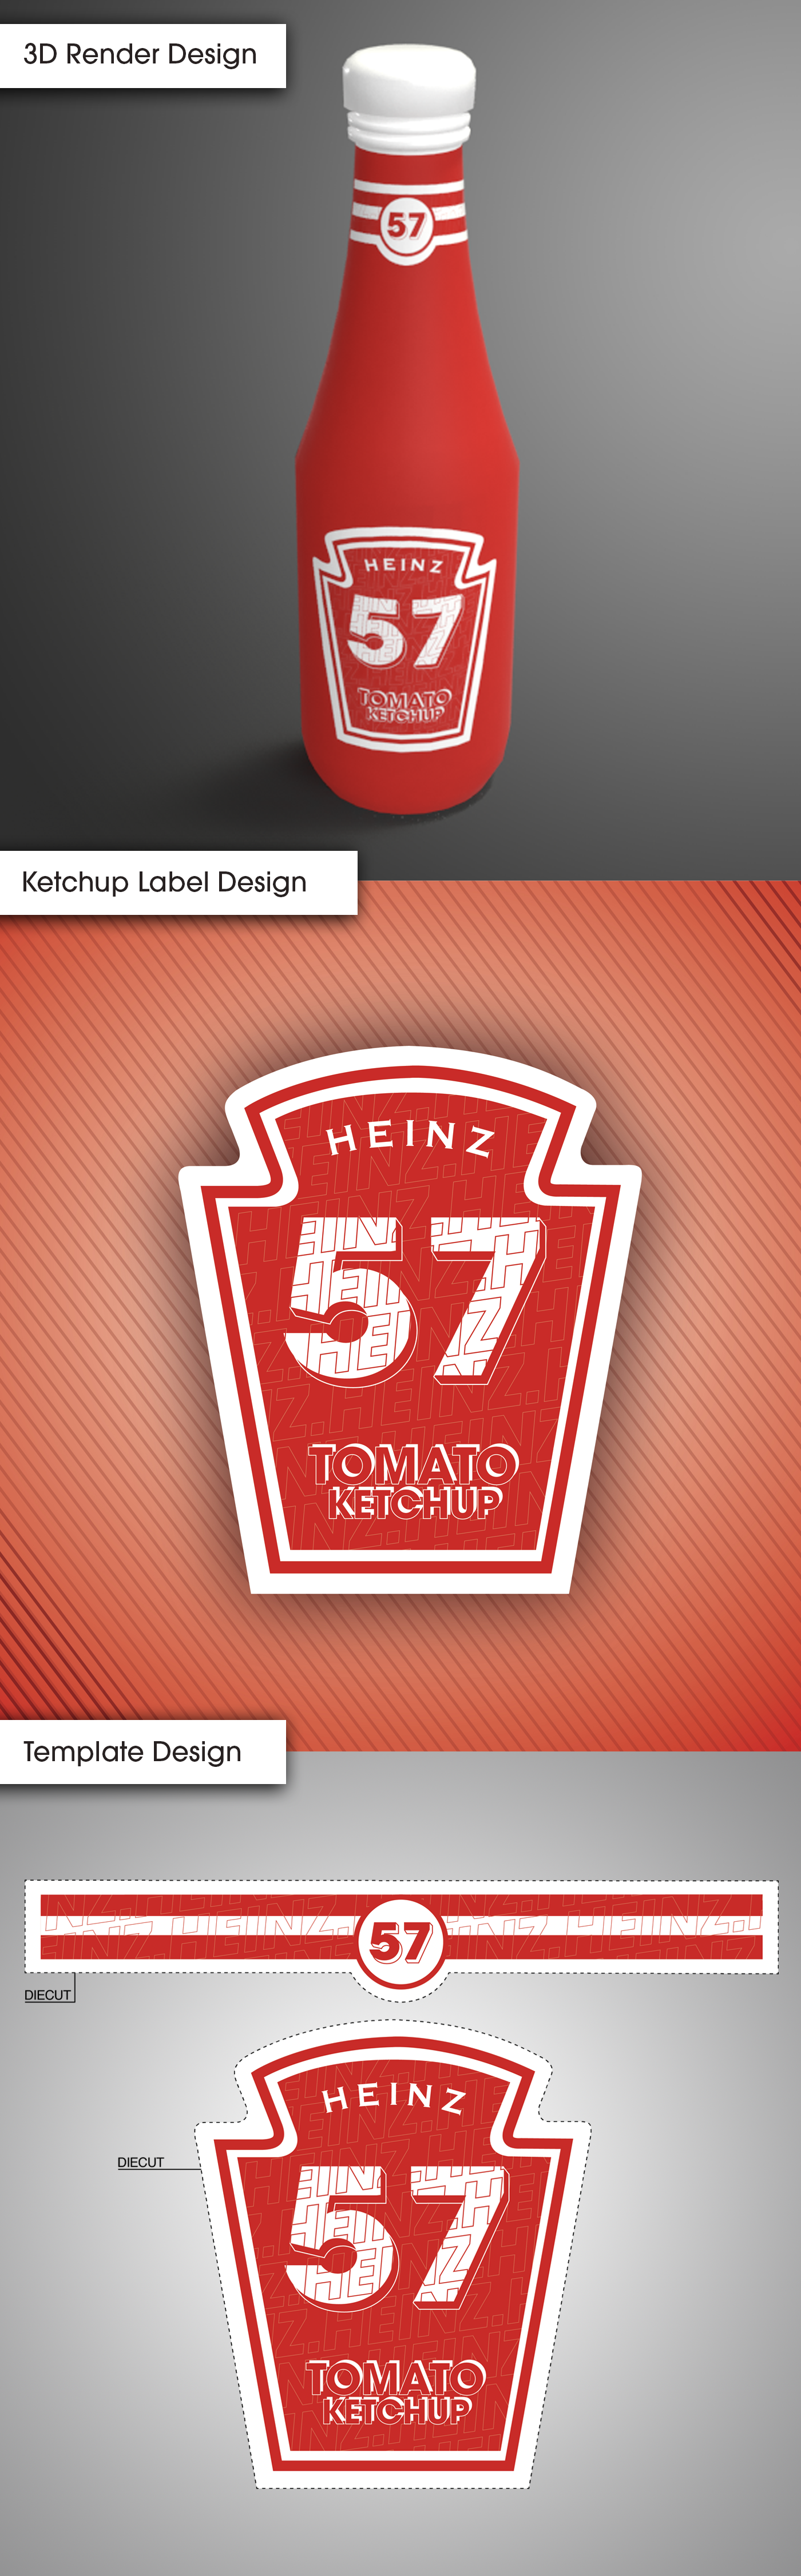 Heinz Ketchup Label Design  25D Render  Branding on Behance With Regard To Heinz Label Template